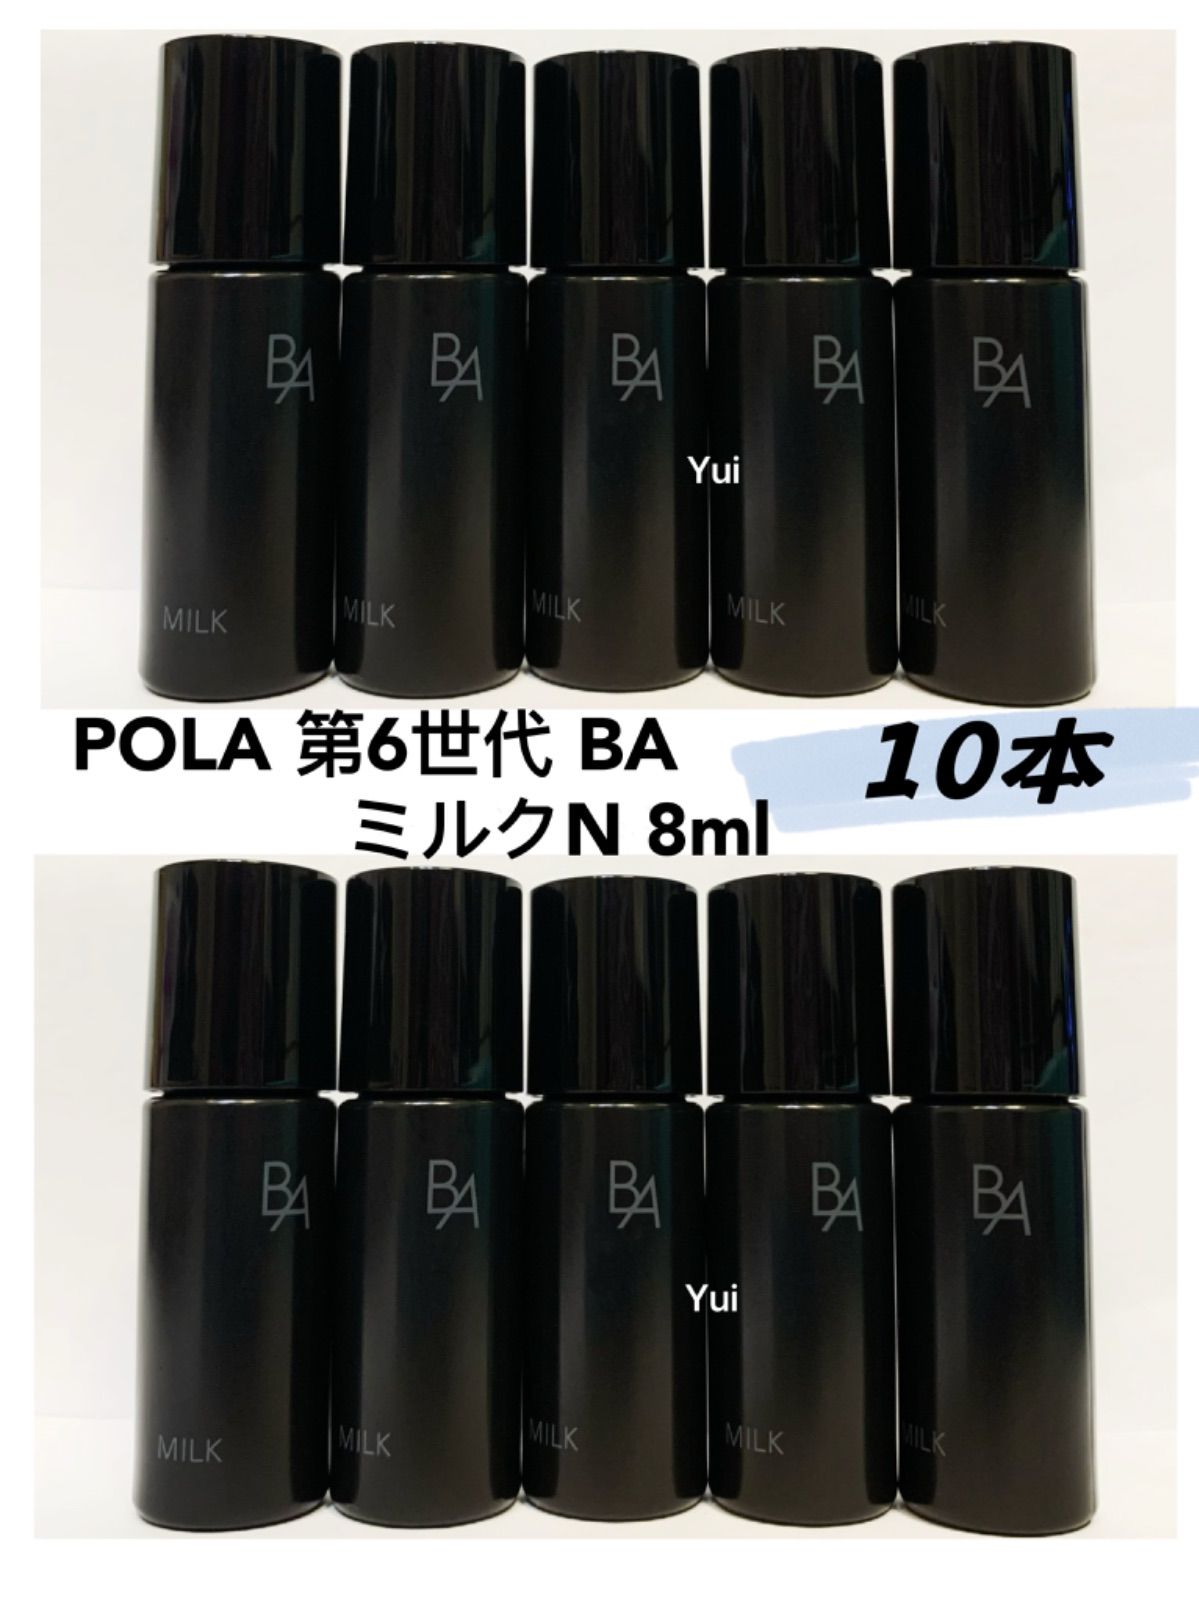 コスメ/美容ポーラ 第6世代 新BA ミルクN 保湿乳液8ml ×10本 新品未使用